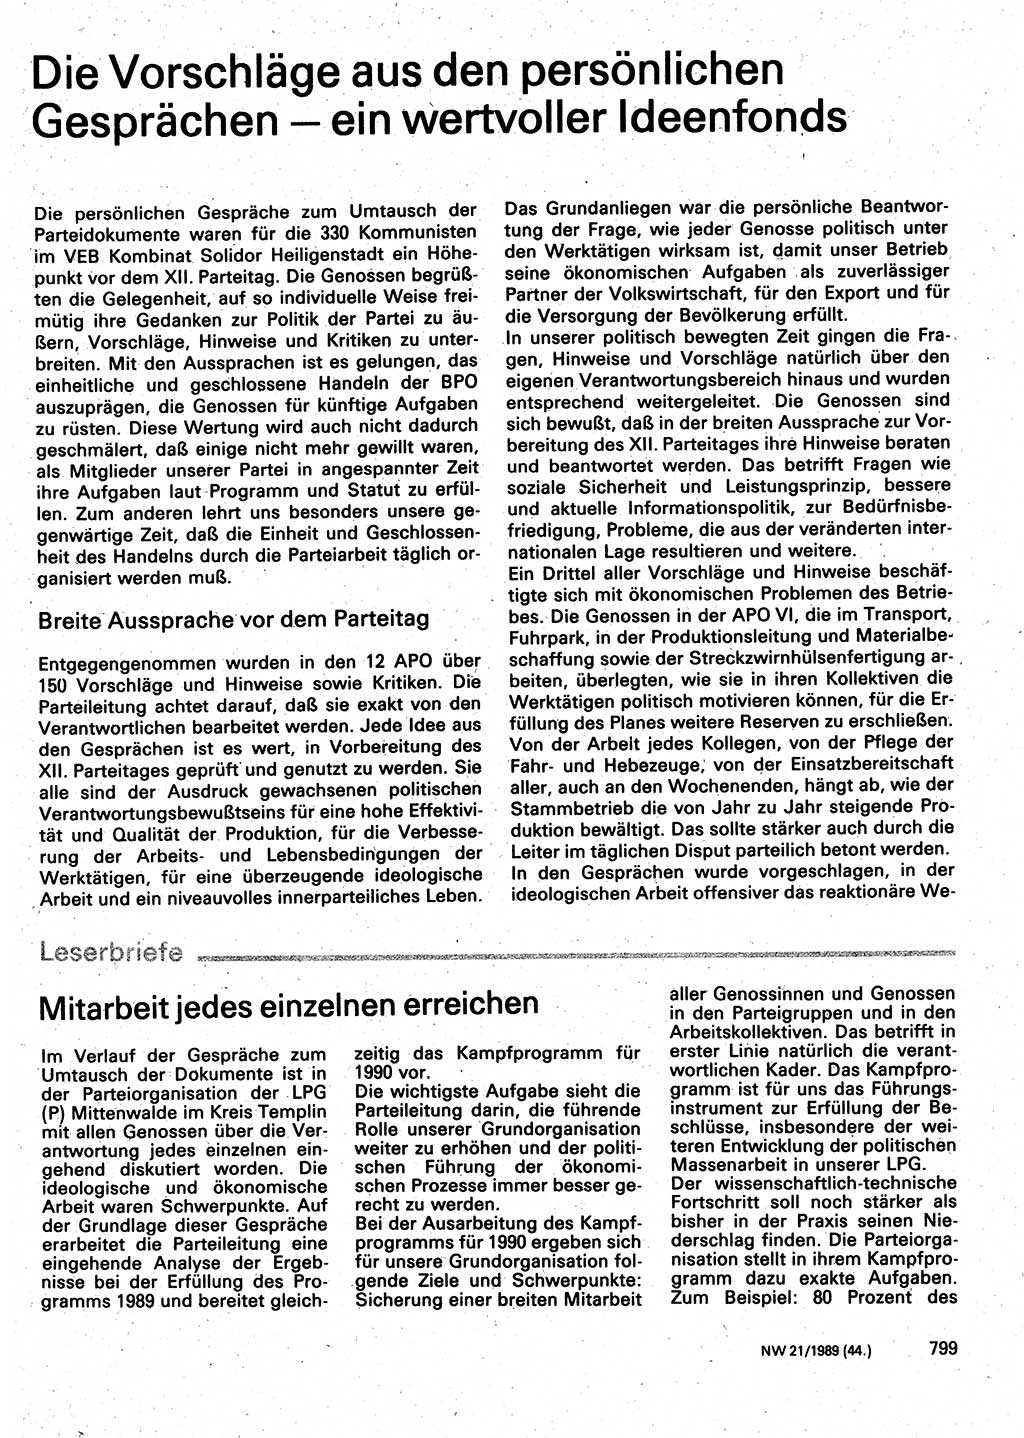 Neuer Weg (NW), Organ des Zentralkomitees (ZK) der SED (Sozialistische Einheitspartei Deutschlands) für Fragen des Parteilebens, 44. Jahrgang [Deutsche Demokratische Republik (DDR)] 1989, Seite 799 (NW ZK SED DDR 1989, S. 799)